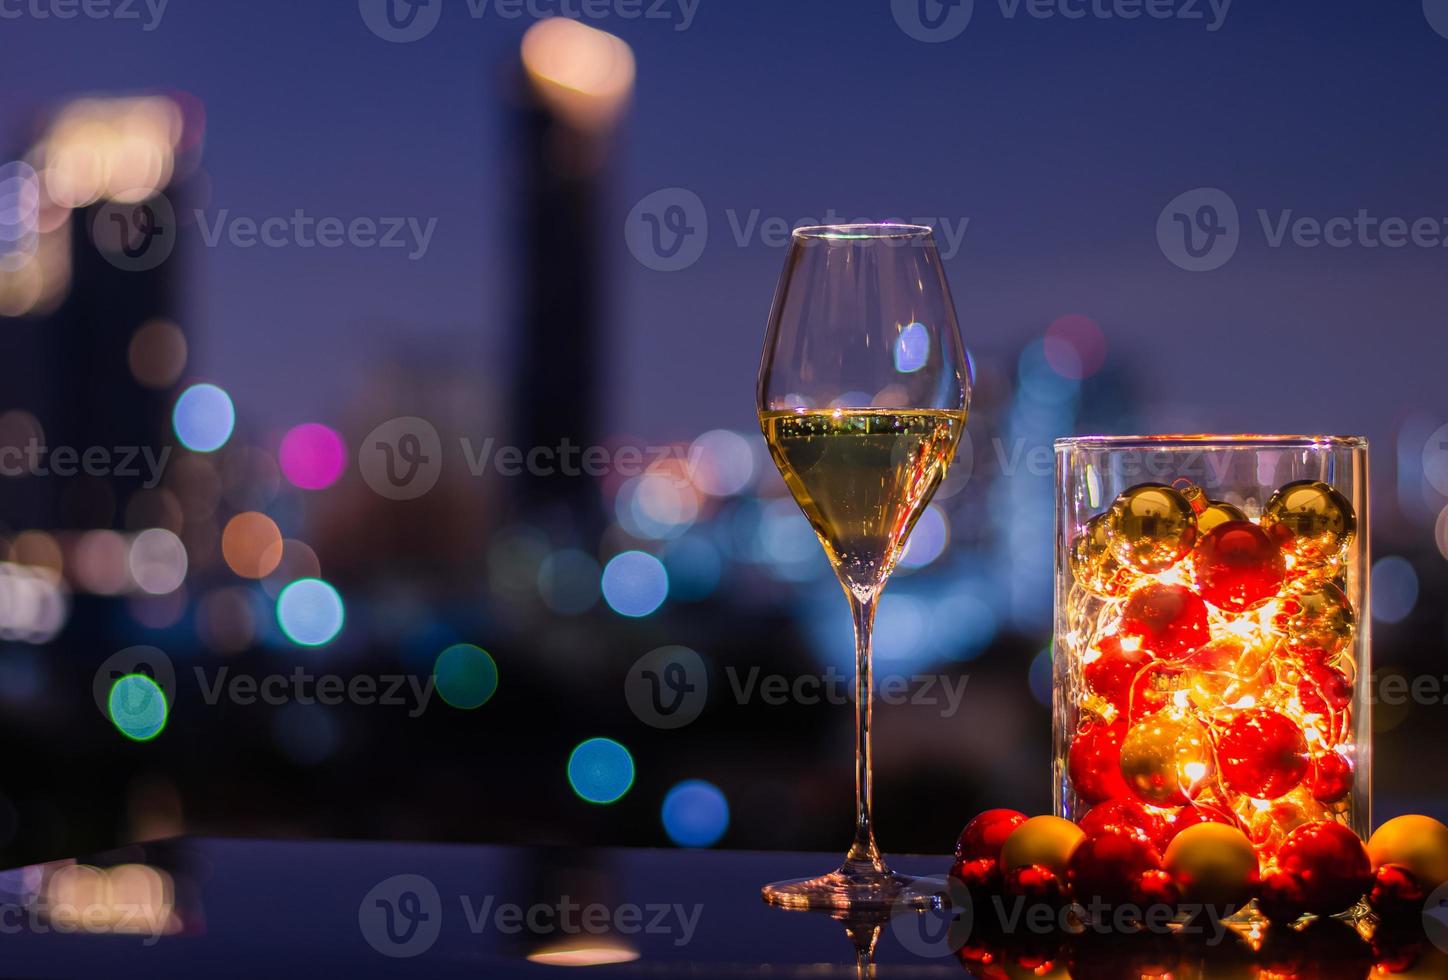 einzelnes glas weißwein, das weihnachtsschmuck mit lichtern in glasvase auf buntem stadt-bokeh-hellhintergrund hat. foto